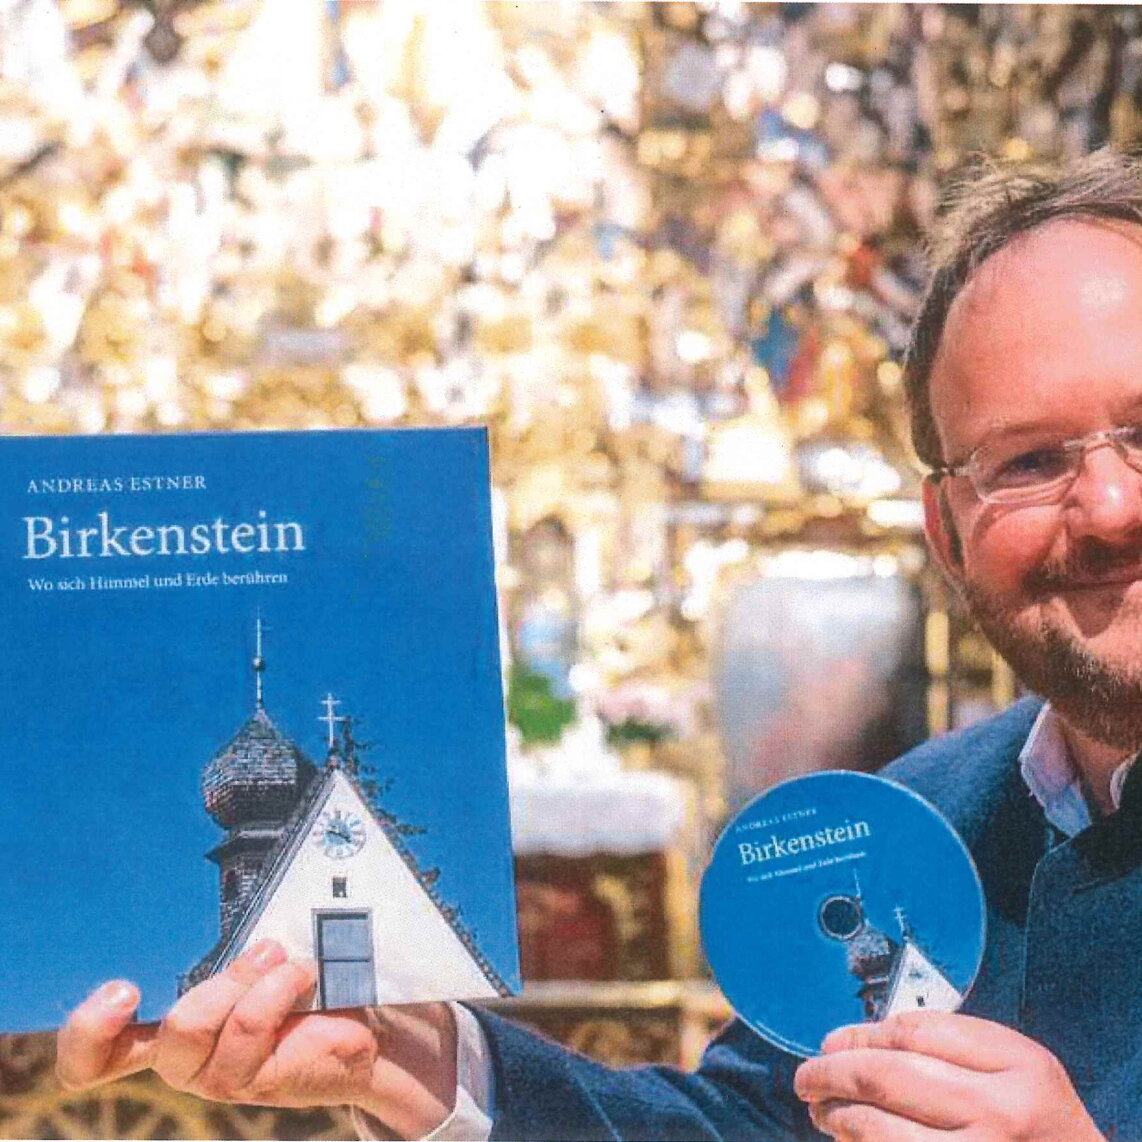 Lesung mit Andreas Estner "Birkenstein - Wo sich Himmel und Erde berühren"